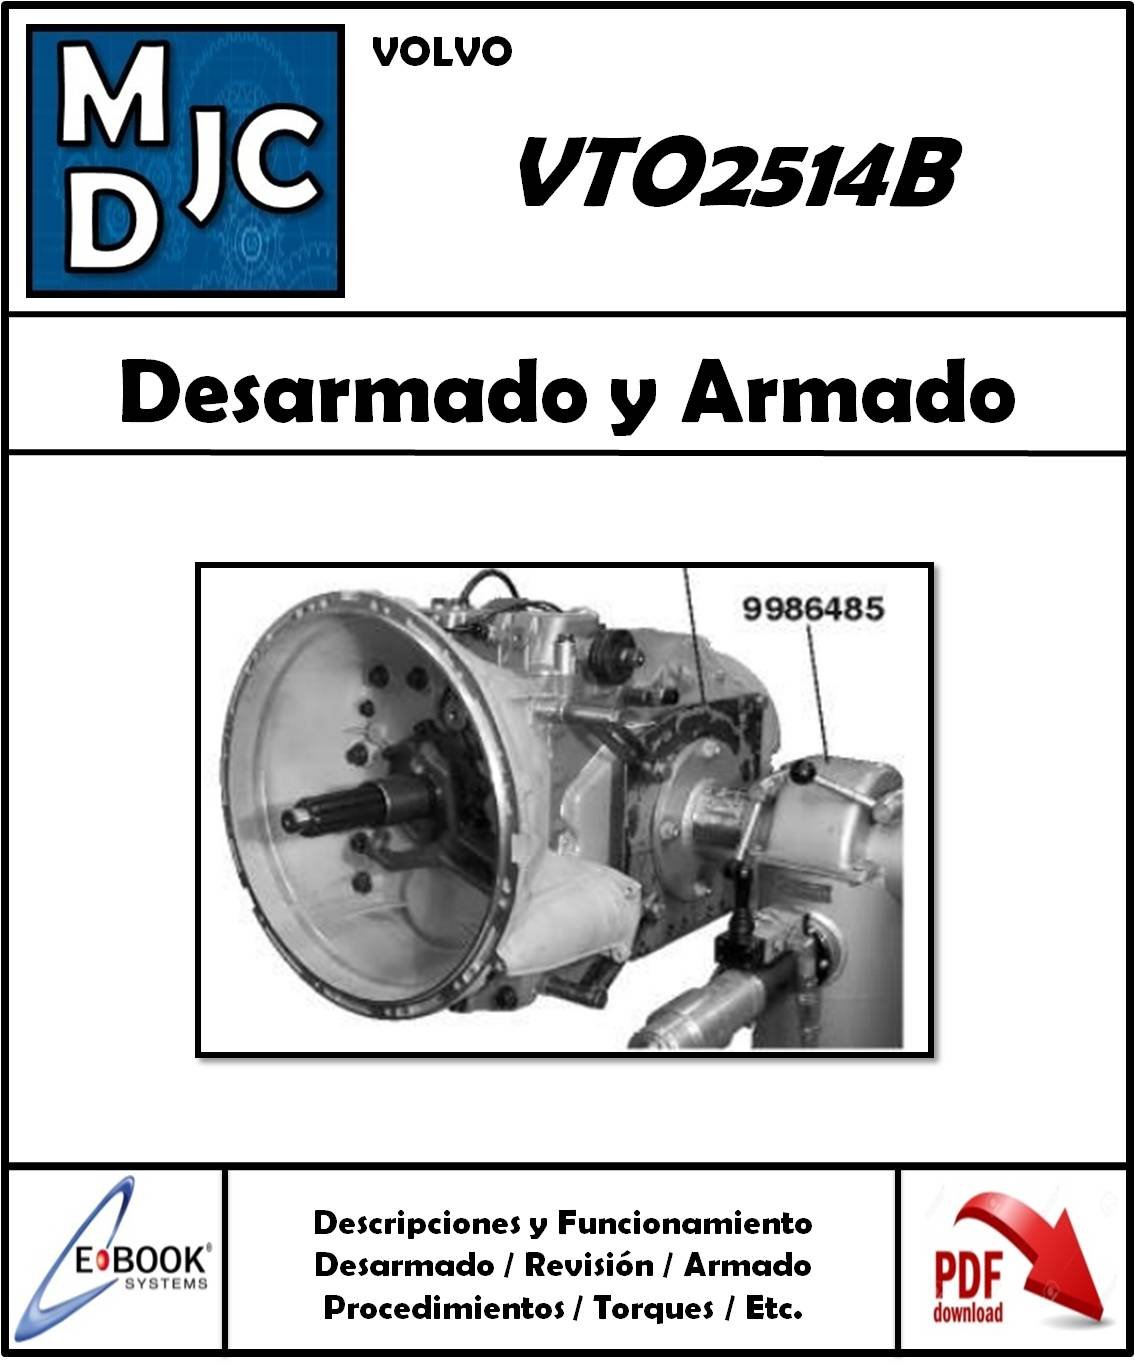 Manual de Taller (Desarmado y Armado) Caja Volvo VTO2415B